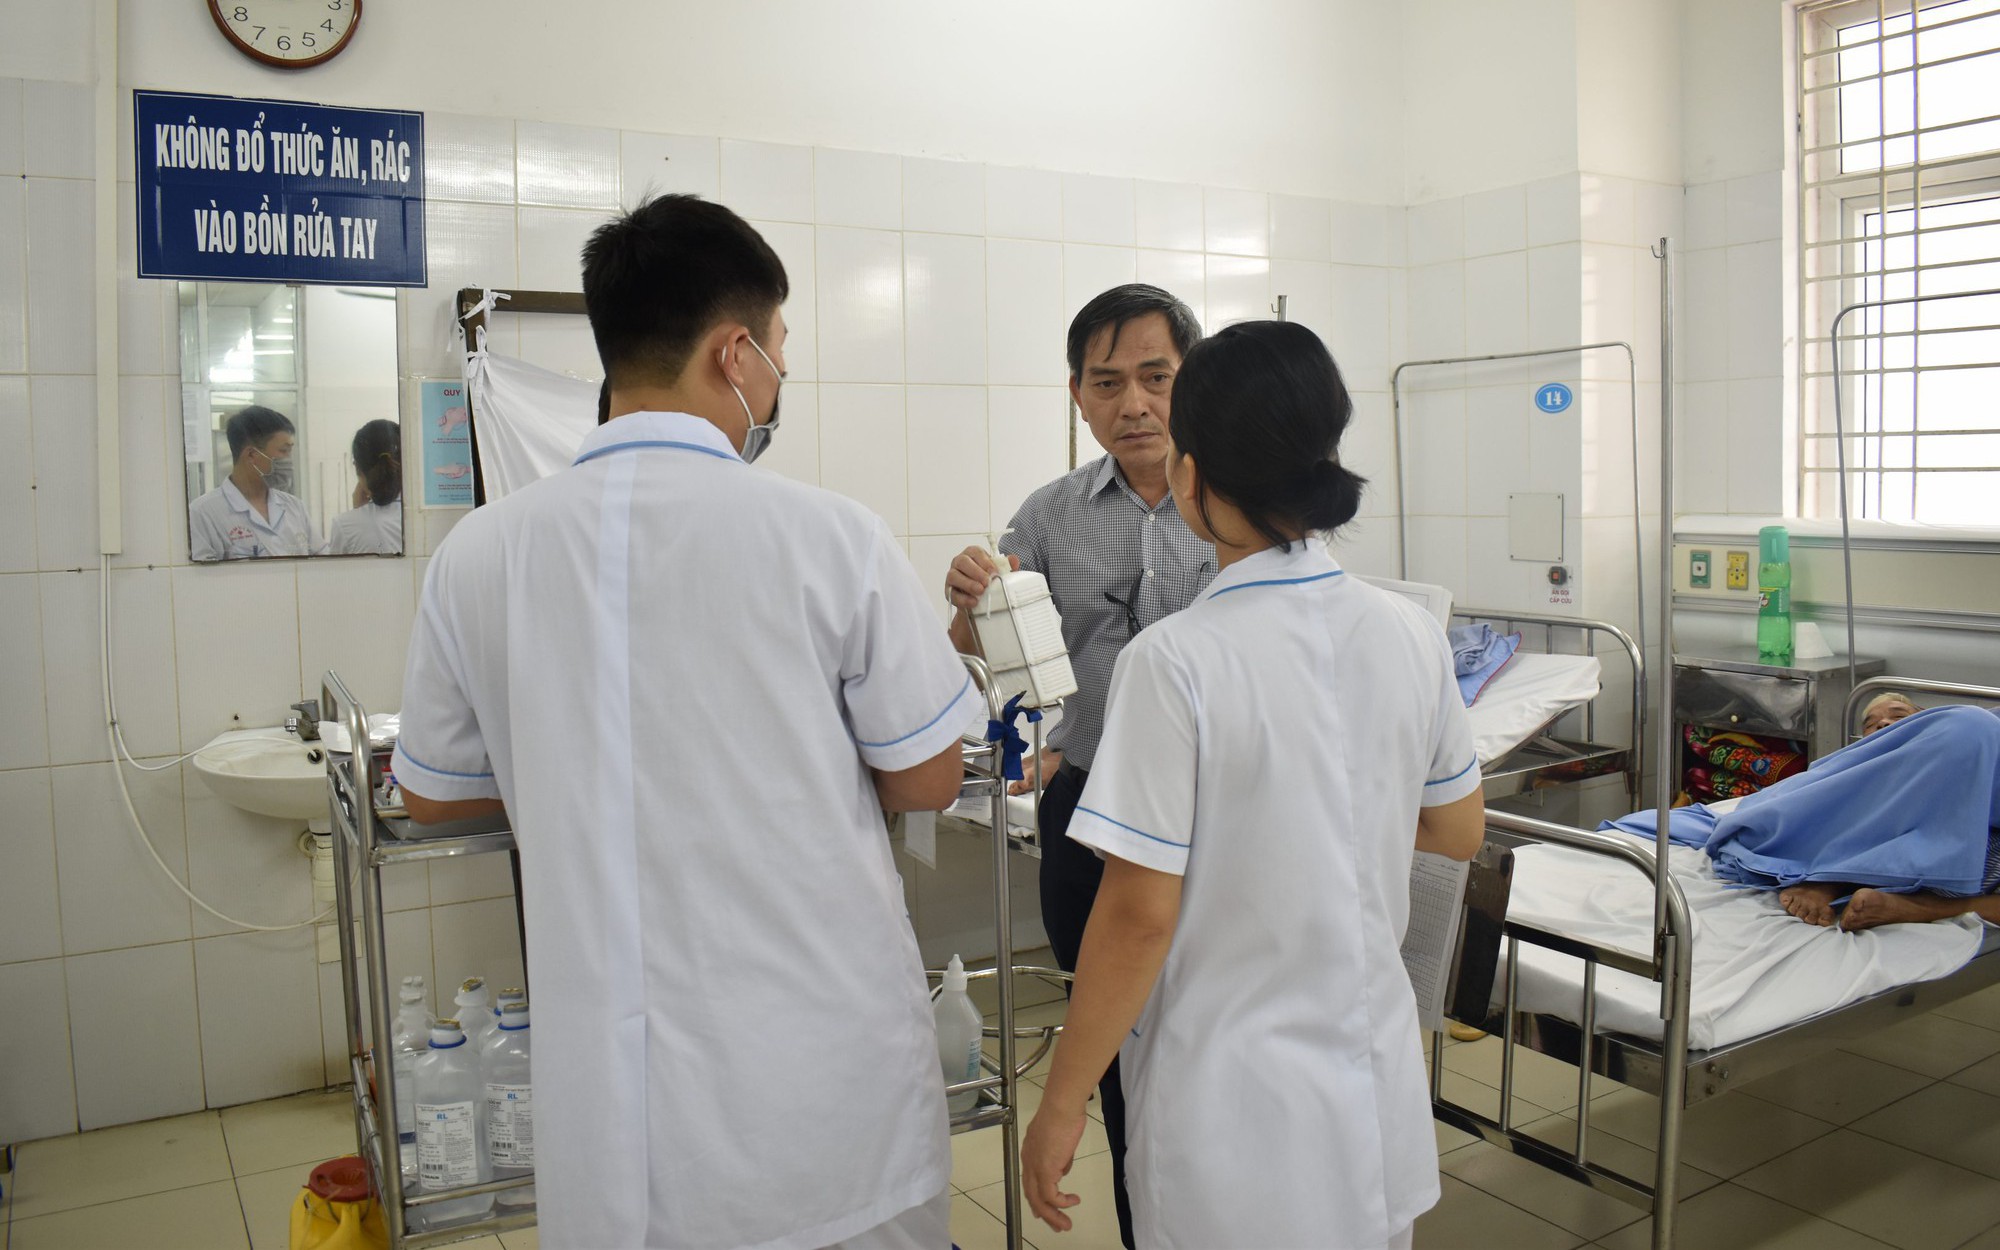 Sở Y tế Hà Nội yêu cầu kiểm tra 3 cơ sở hành nghề y quảng cáo không phép